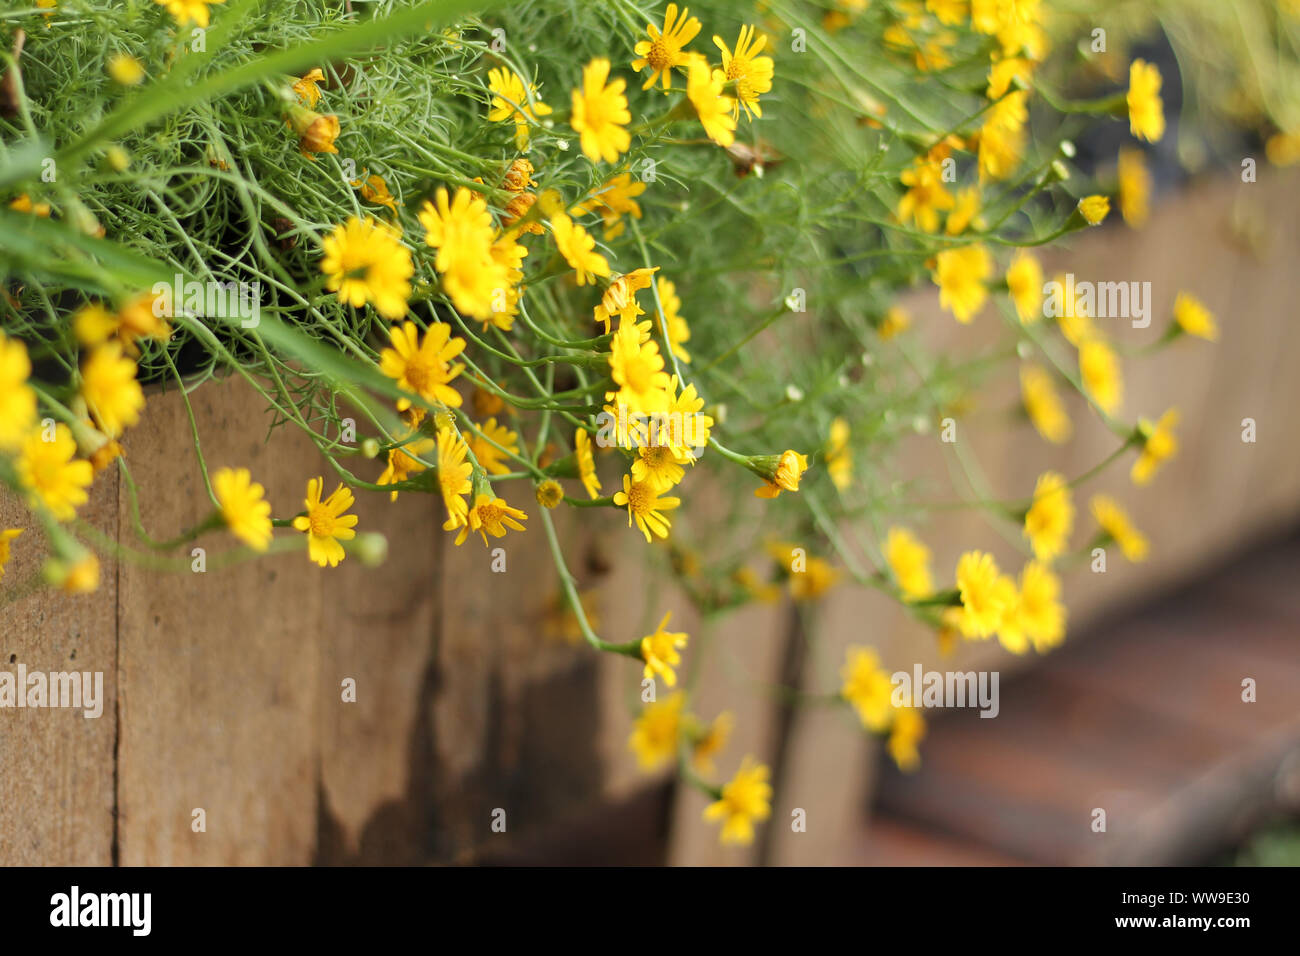 Diminutas flores amarillas de golden rudbeckia florece en la mañana de otoño que trae sentimientos de positividad, la armonía con la naturaleza y el bienestar Foto de stock